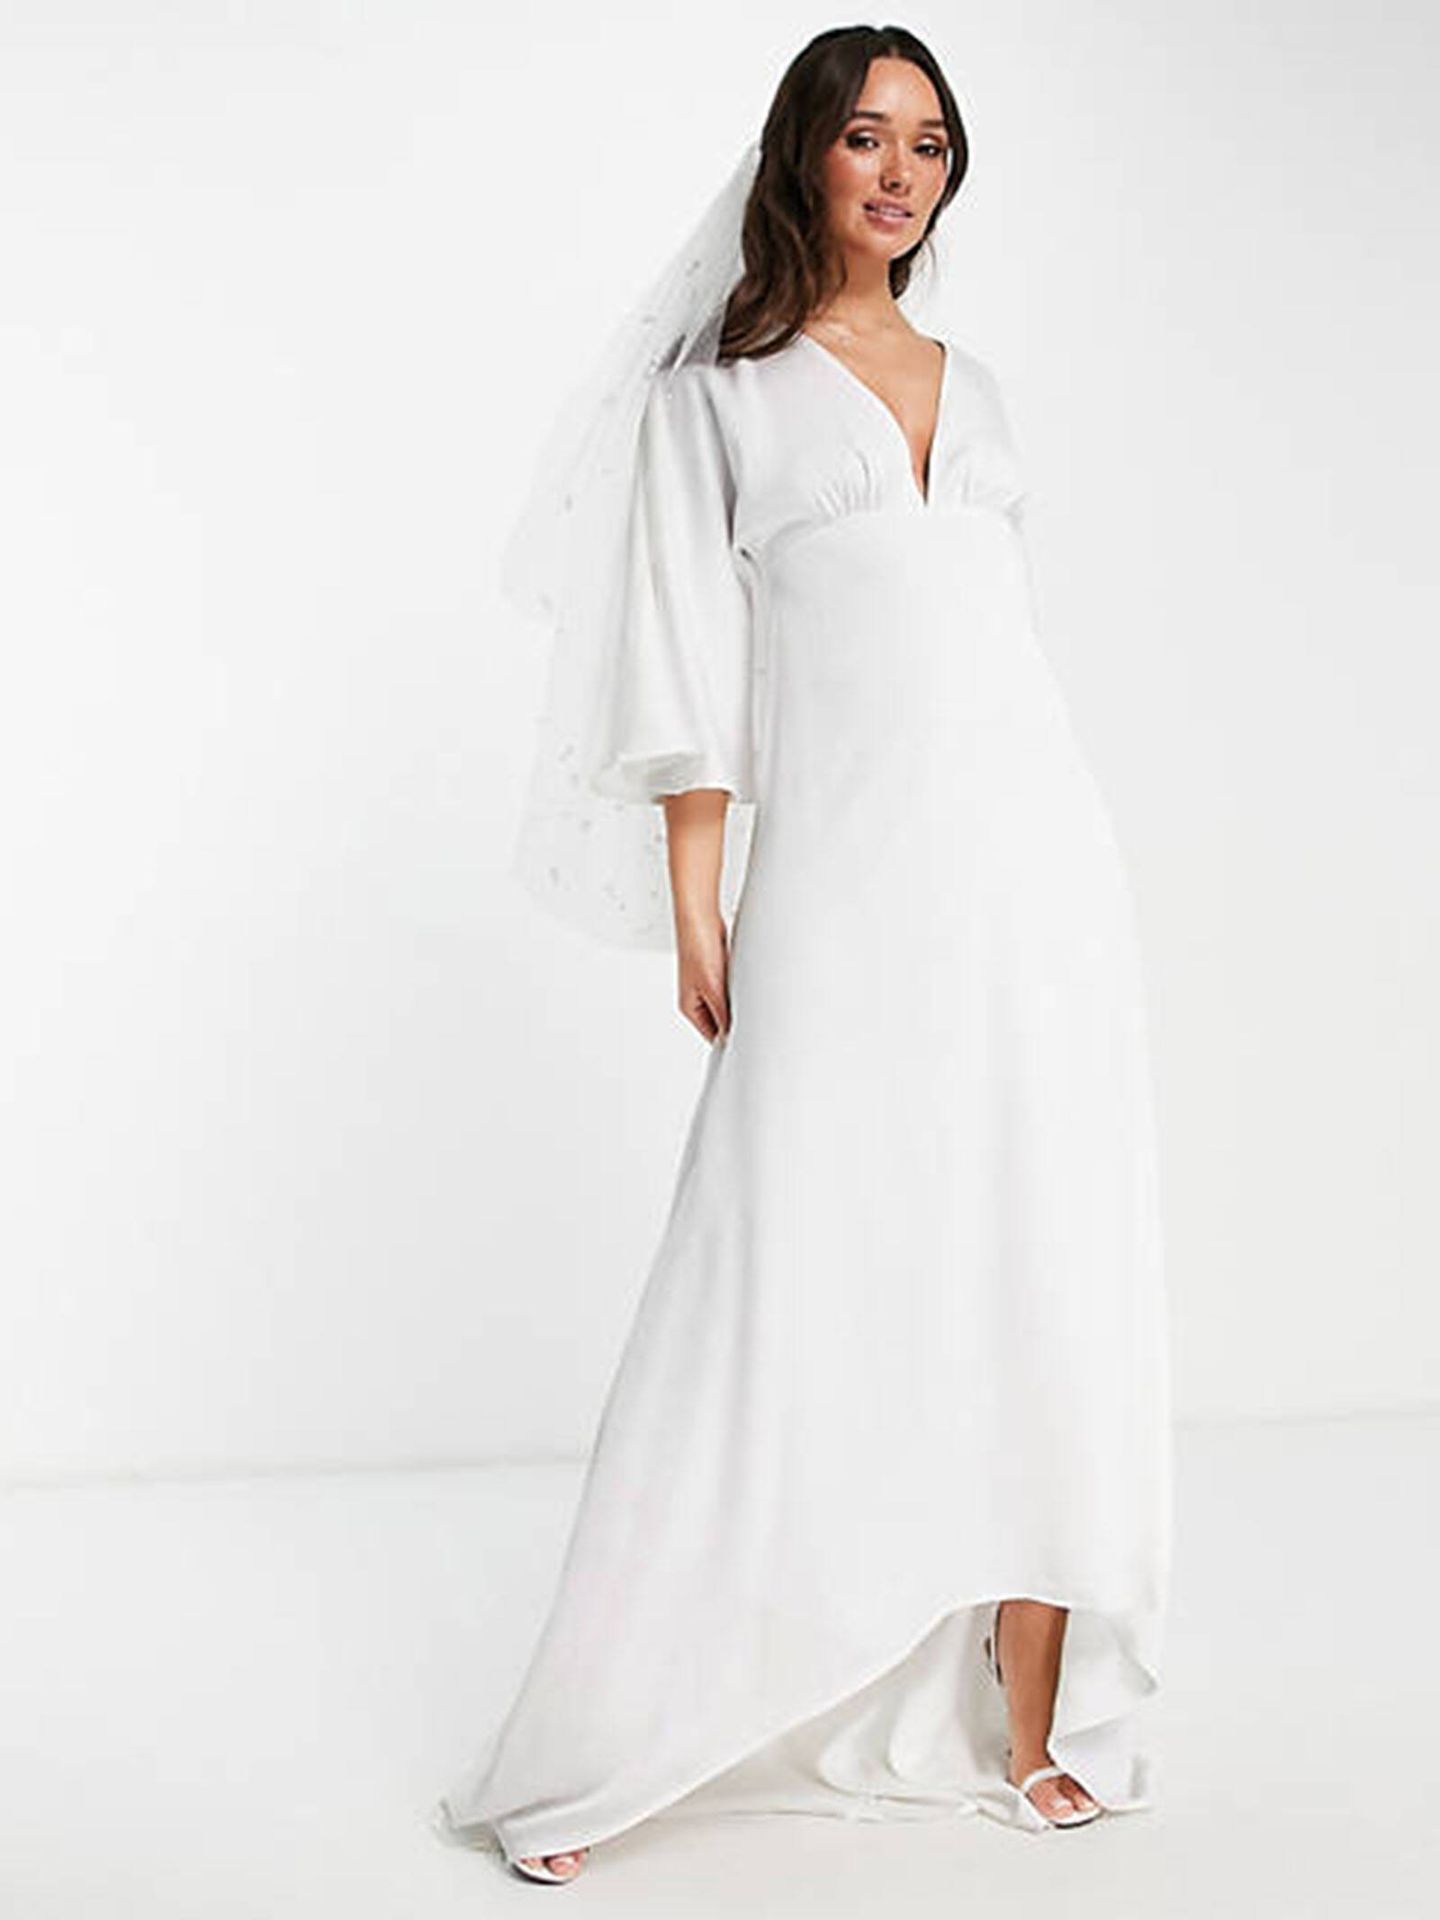 Vestido de novia blanco, elegante y low cost. (Asos/Cortesía)